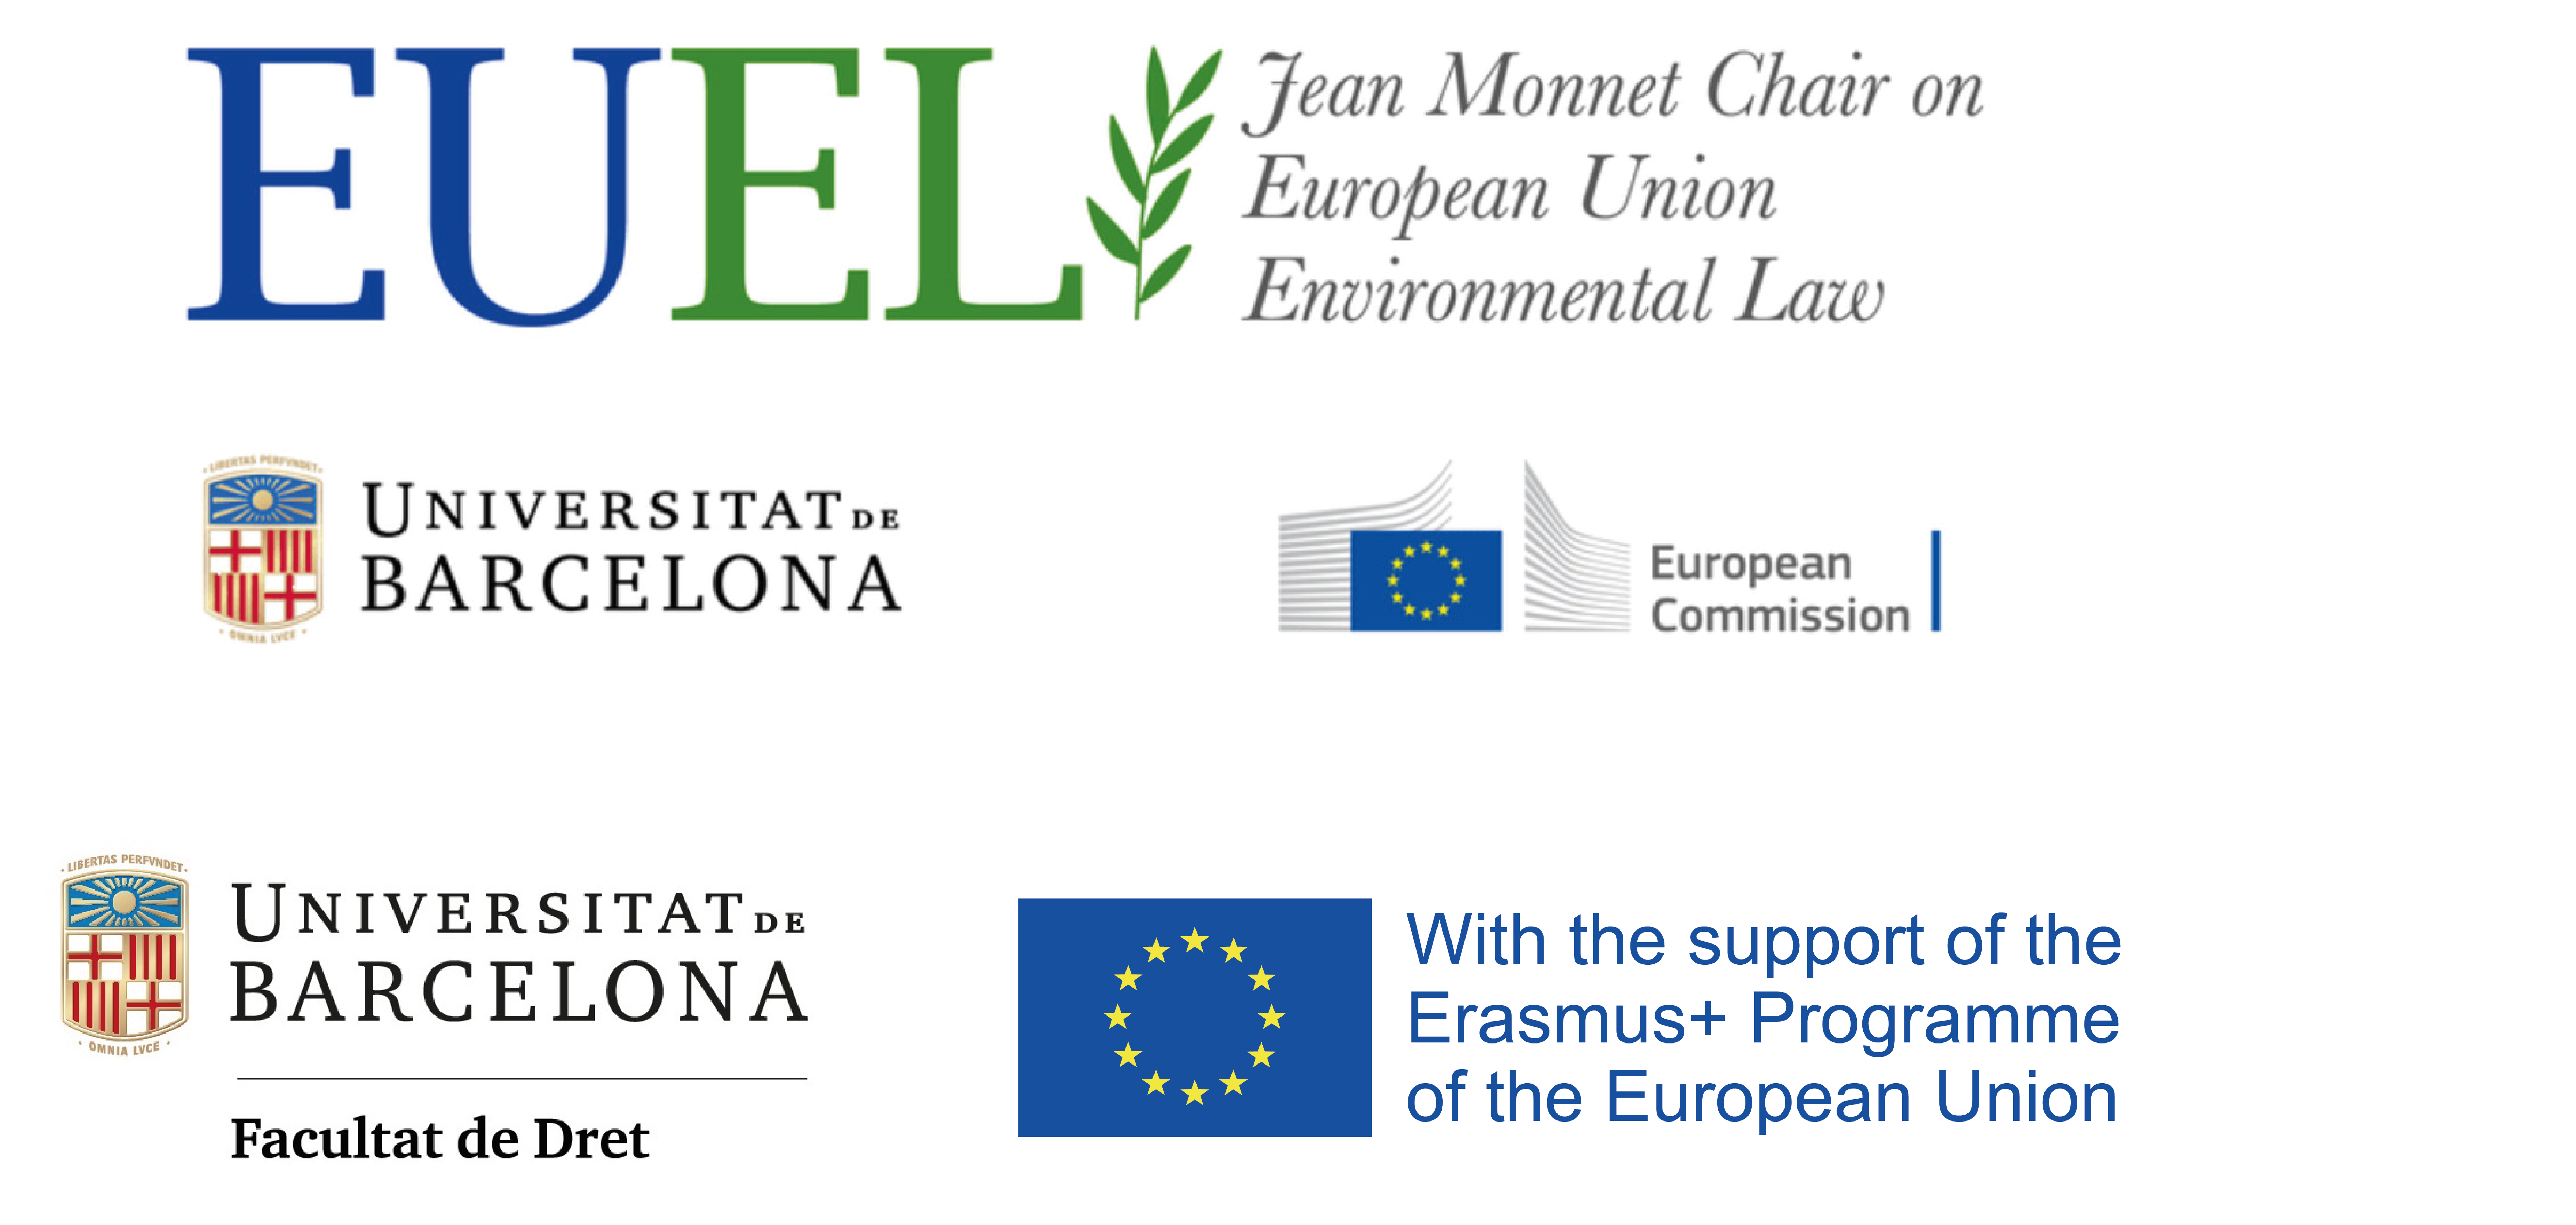 Jean Monnet Chair of EU Environmental Law